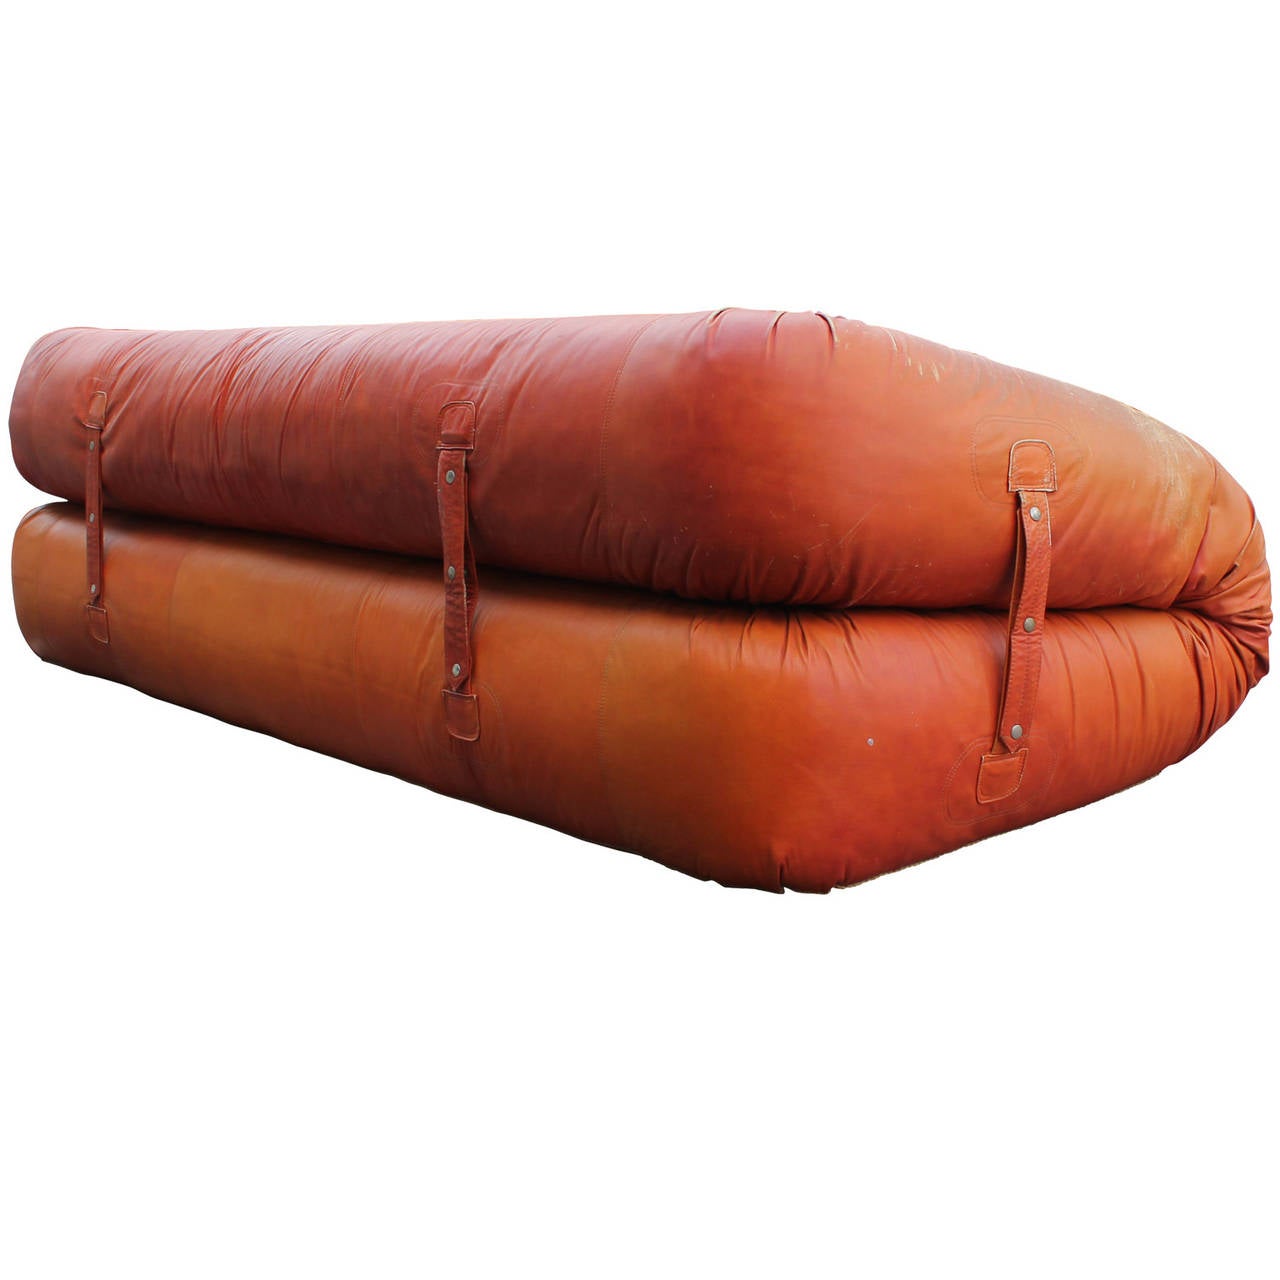 leather anfibio sofa bed by alessandro becchi for giovannetti collezioni